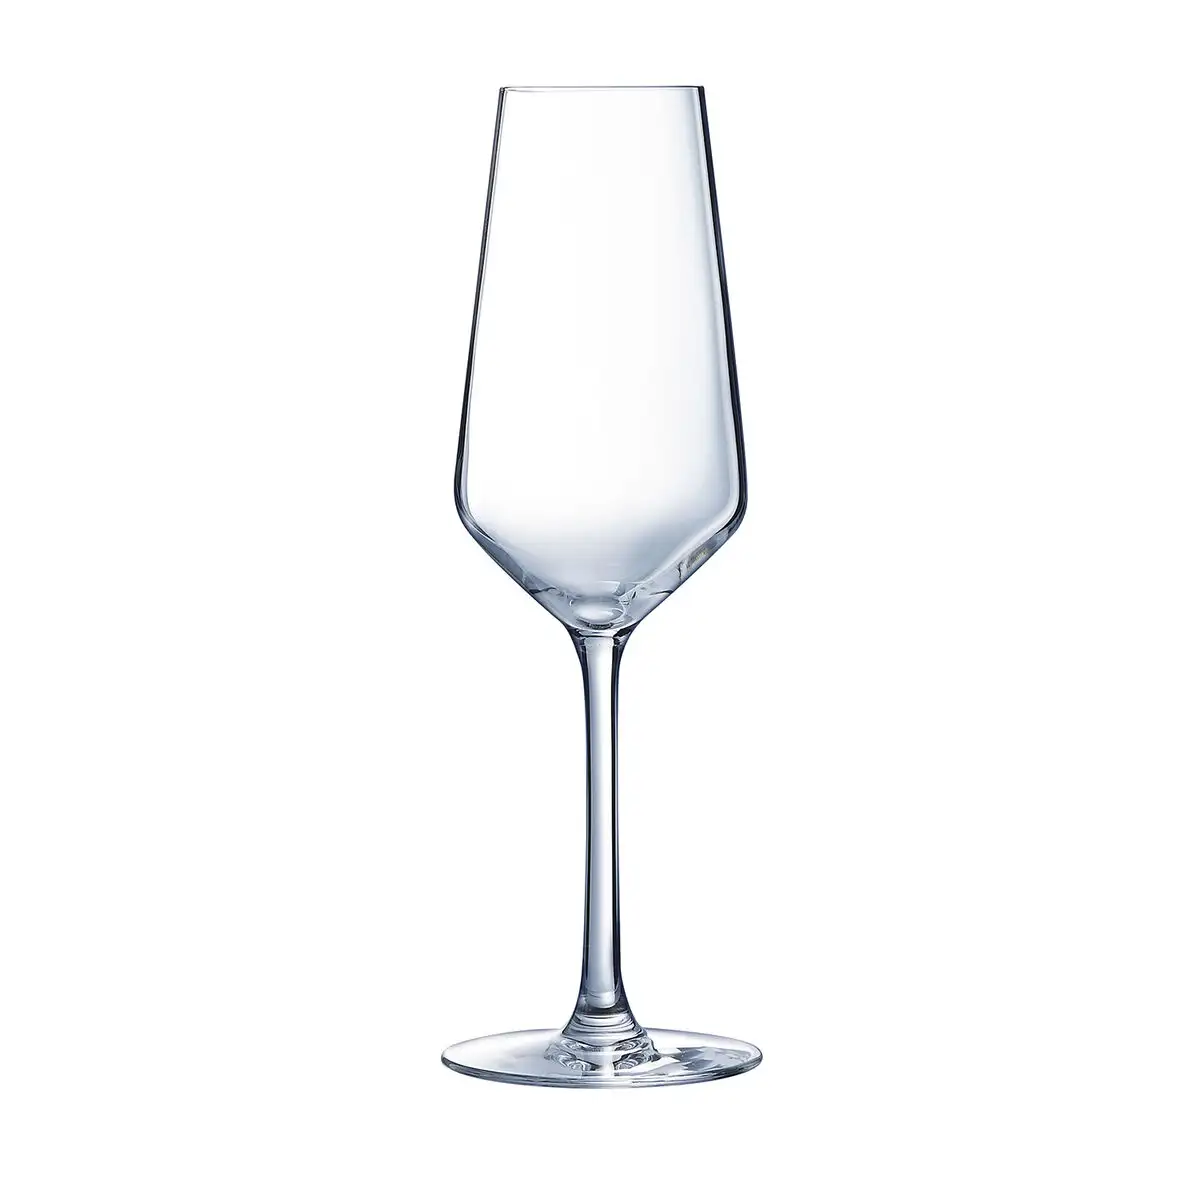 Set de verres arcoroc vina juliette champagne transparent verre 230 ml 6 unites _6506. DIAYTAR SENEGAL - L'Art de Choisir, l'Art de S'émerveiller. Explorez notre boutique en ligne et choisissez des articles qui éveillent votre sens de l'émerveillement.